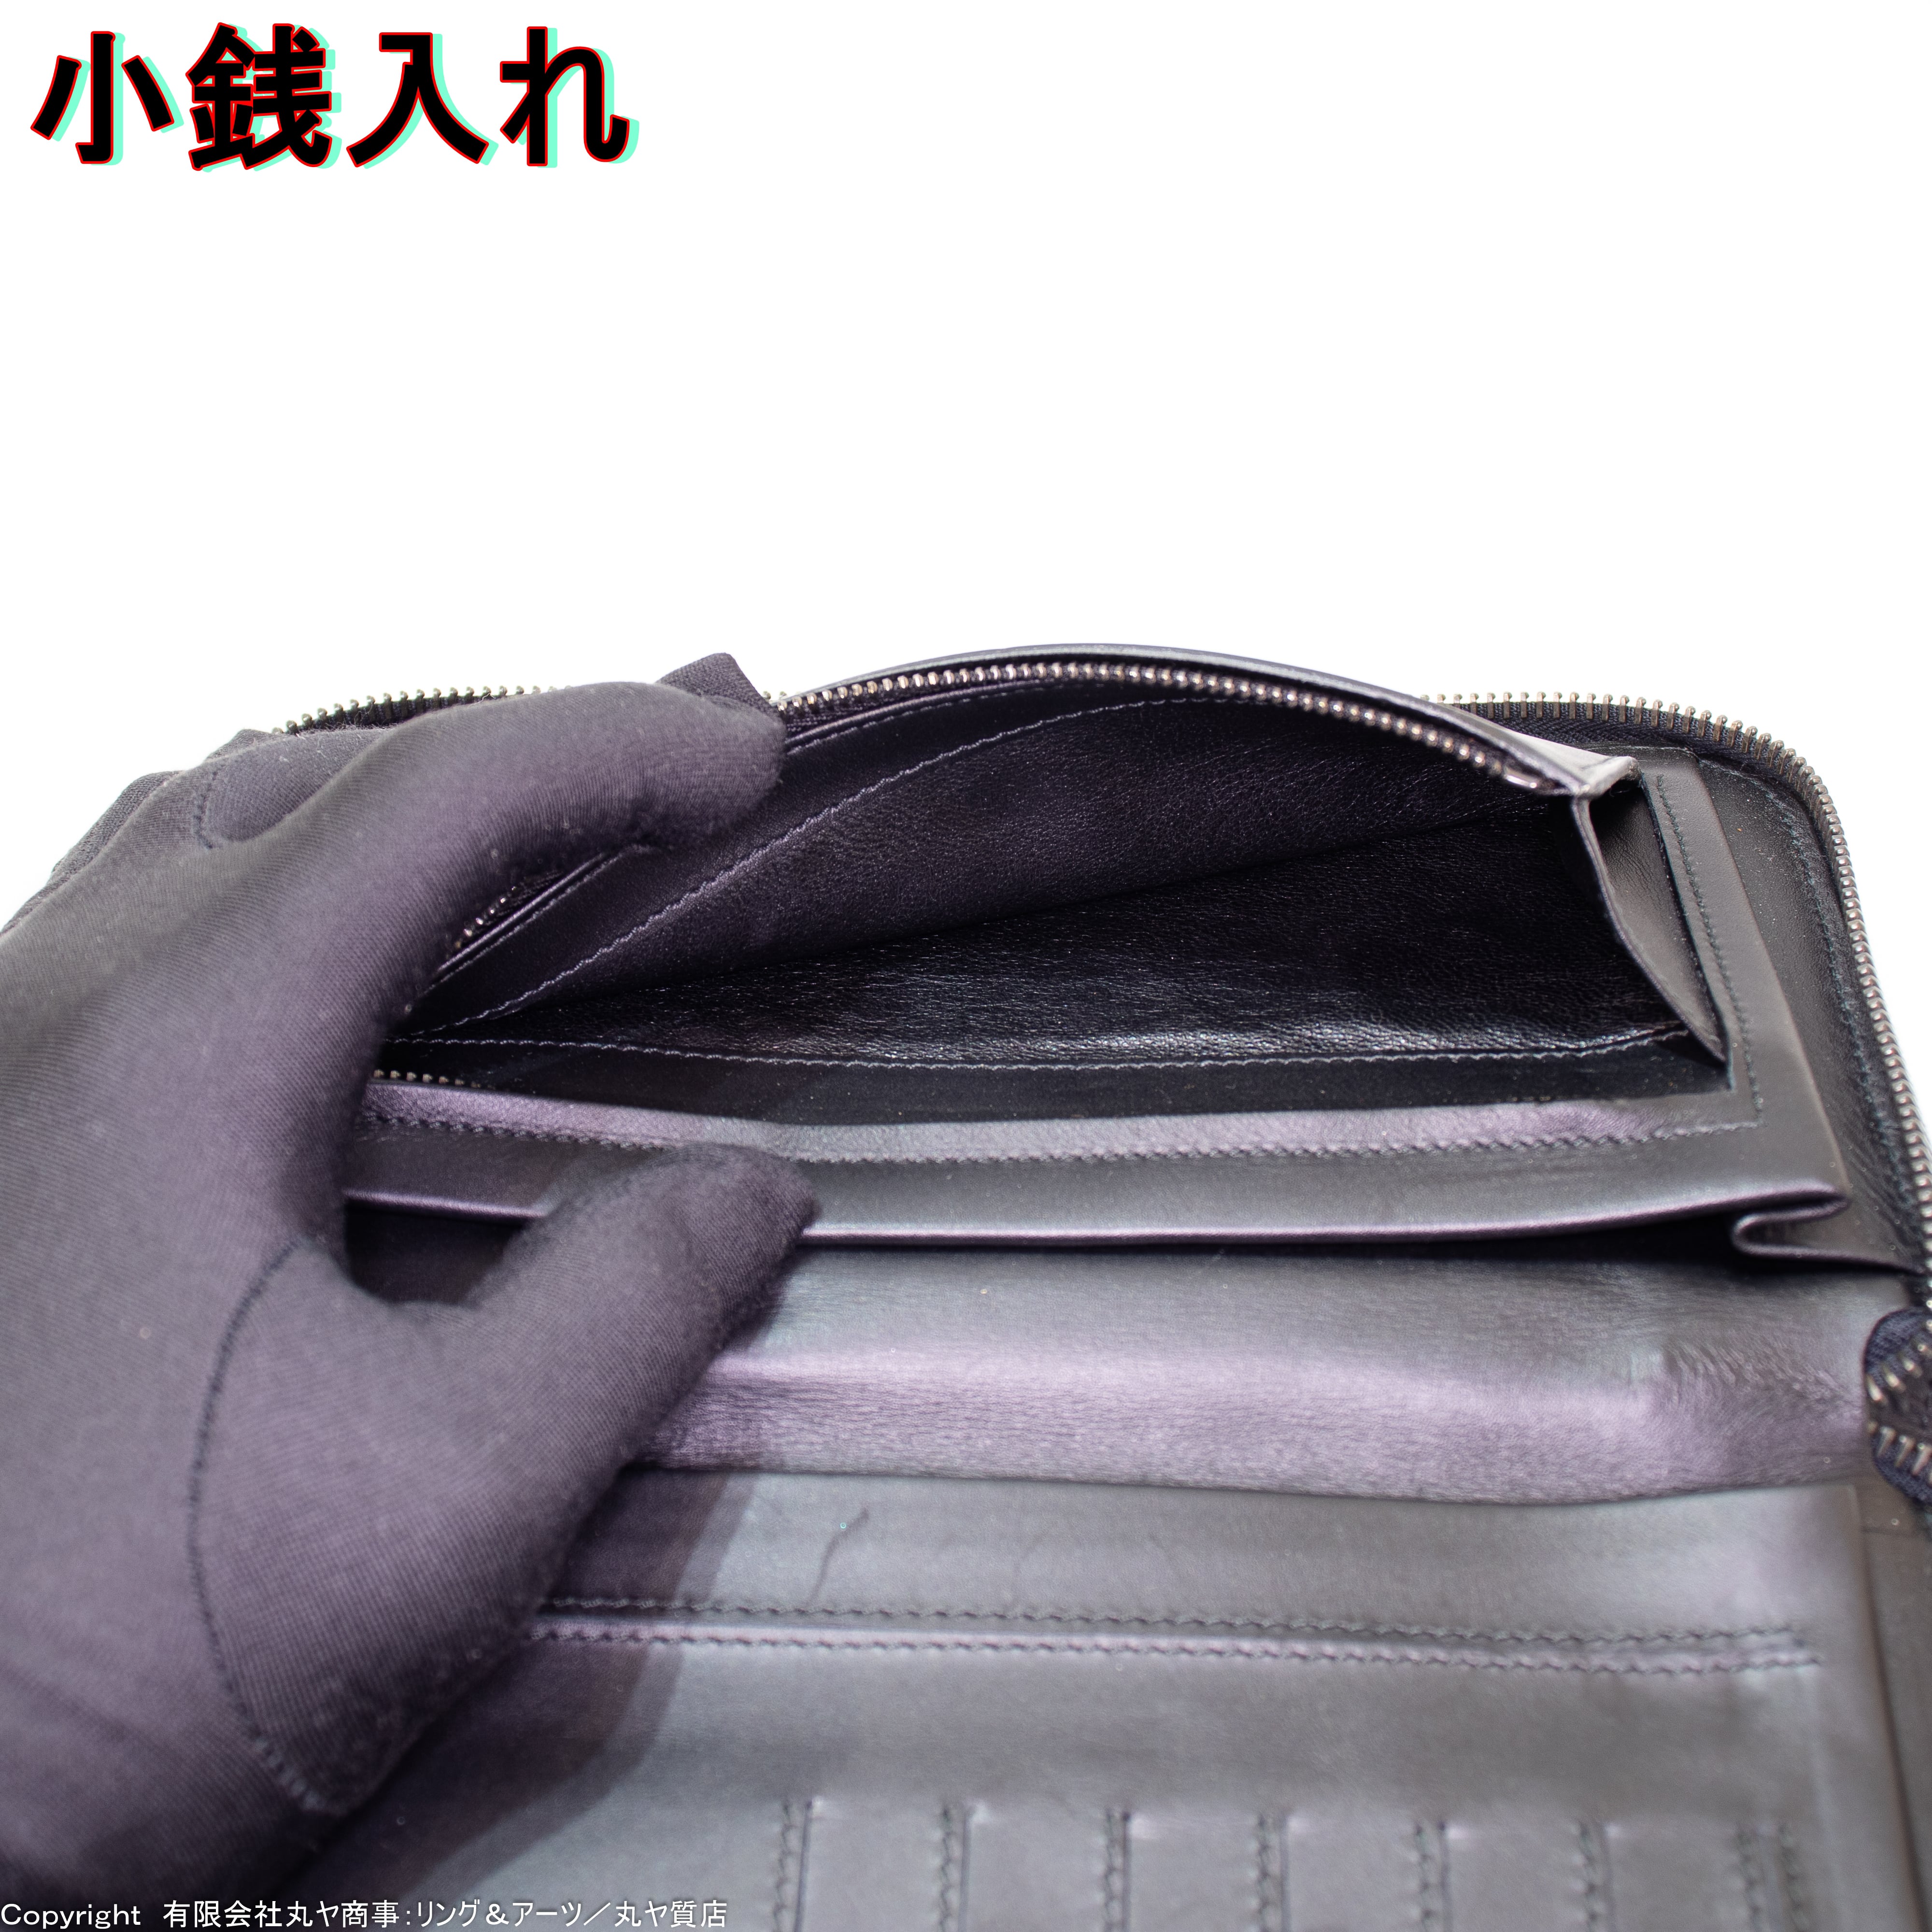 ボッテガ・ヴェネタ:トラベルケース財布/型/ボッテガ